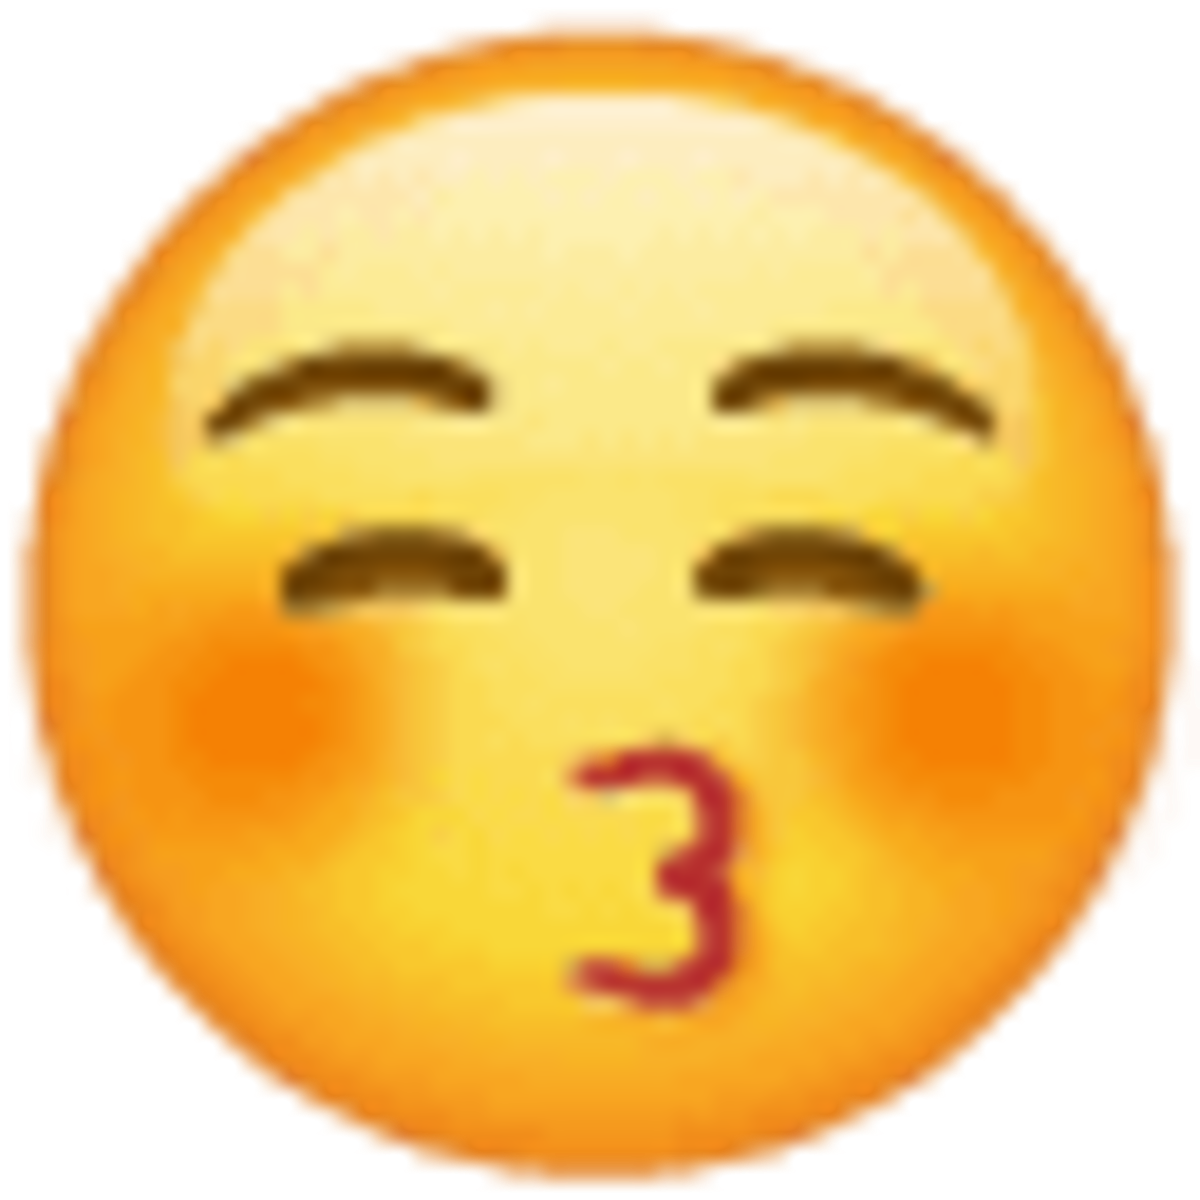 Emoji 1f61a, cara besando con ojos cerrados